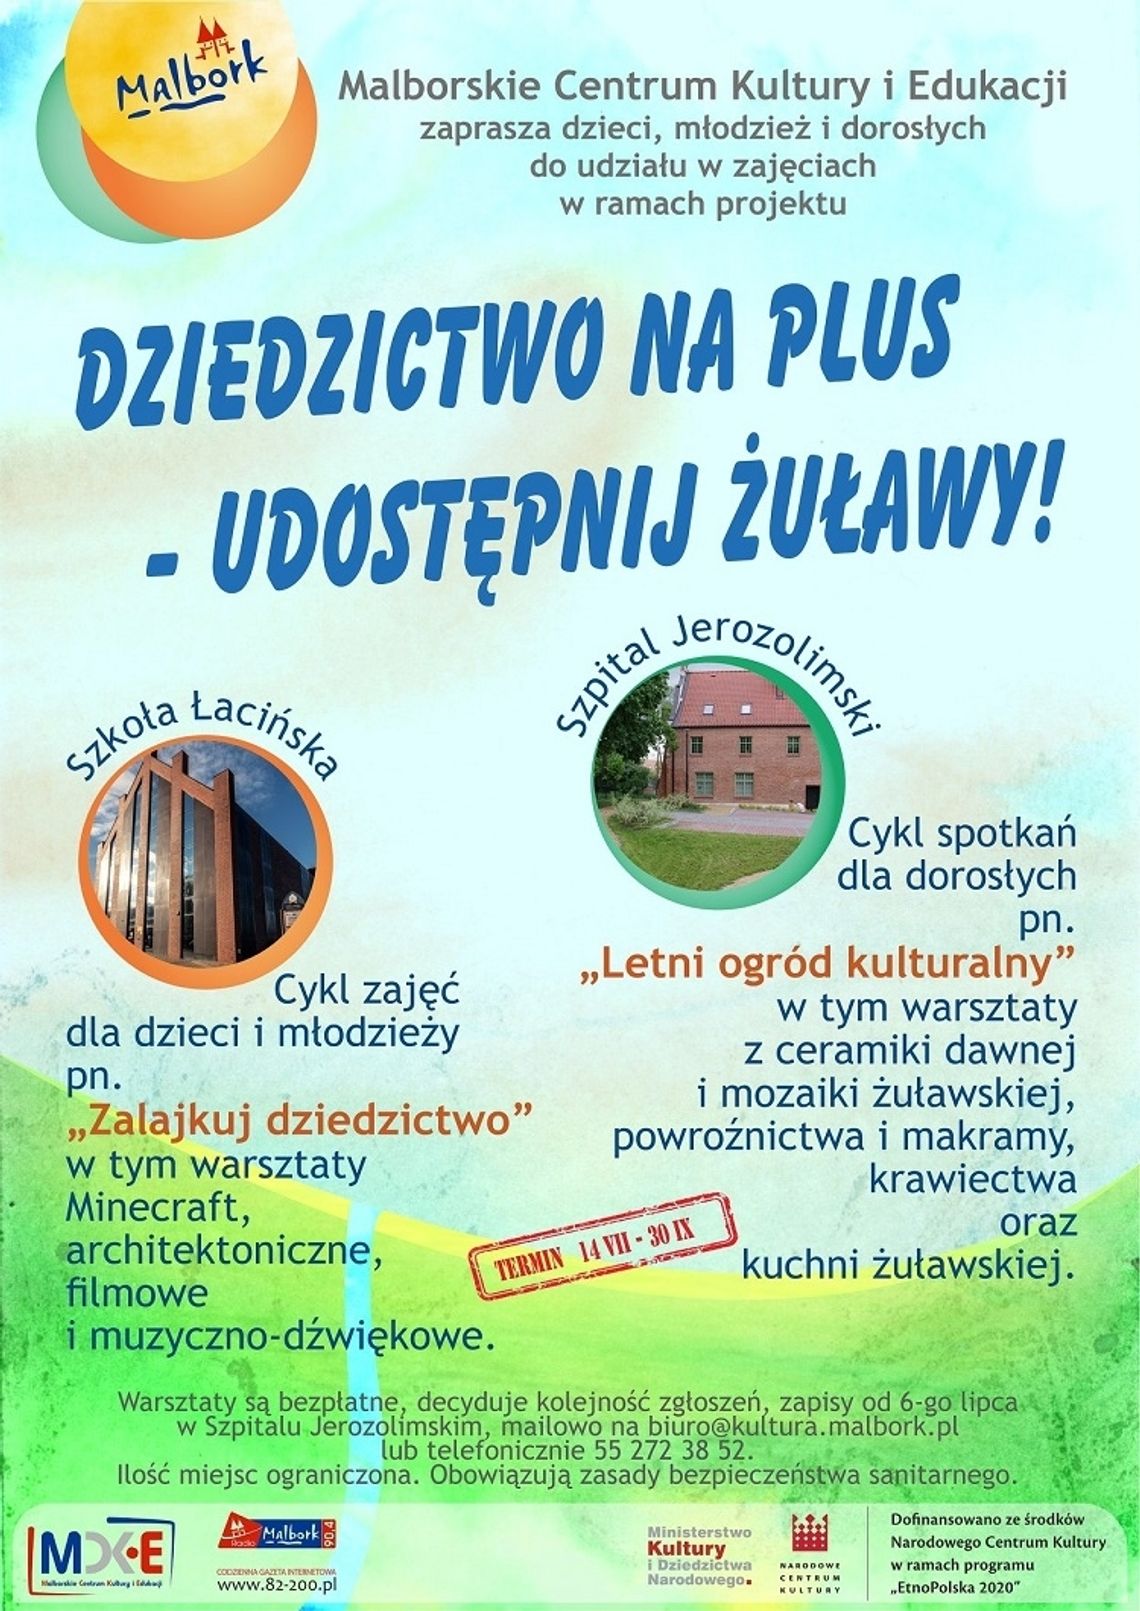 CKiE Szkoła Łacińska zaprasza na warsztaty pn. "Zalajkuj dziedzictwo"